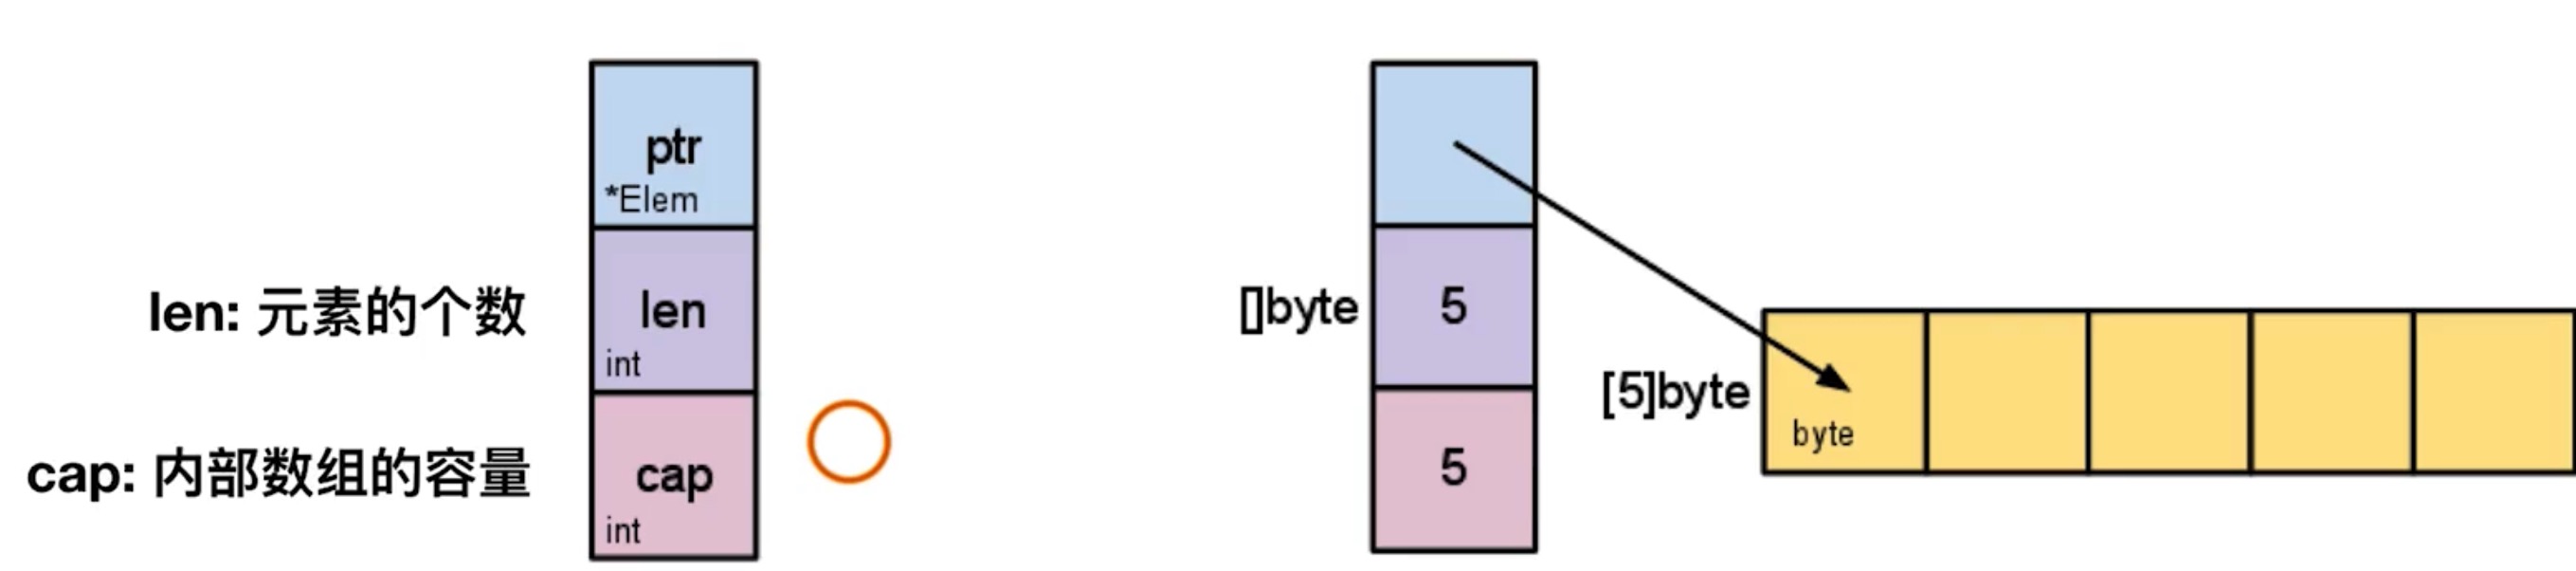 基本类型-切片-slice-结构体 - 图1